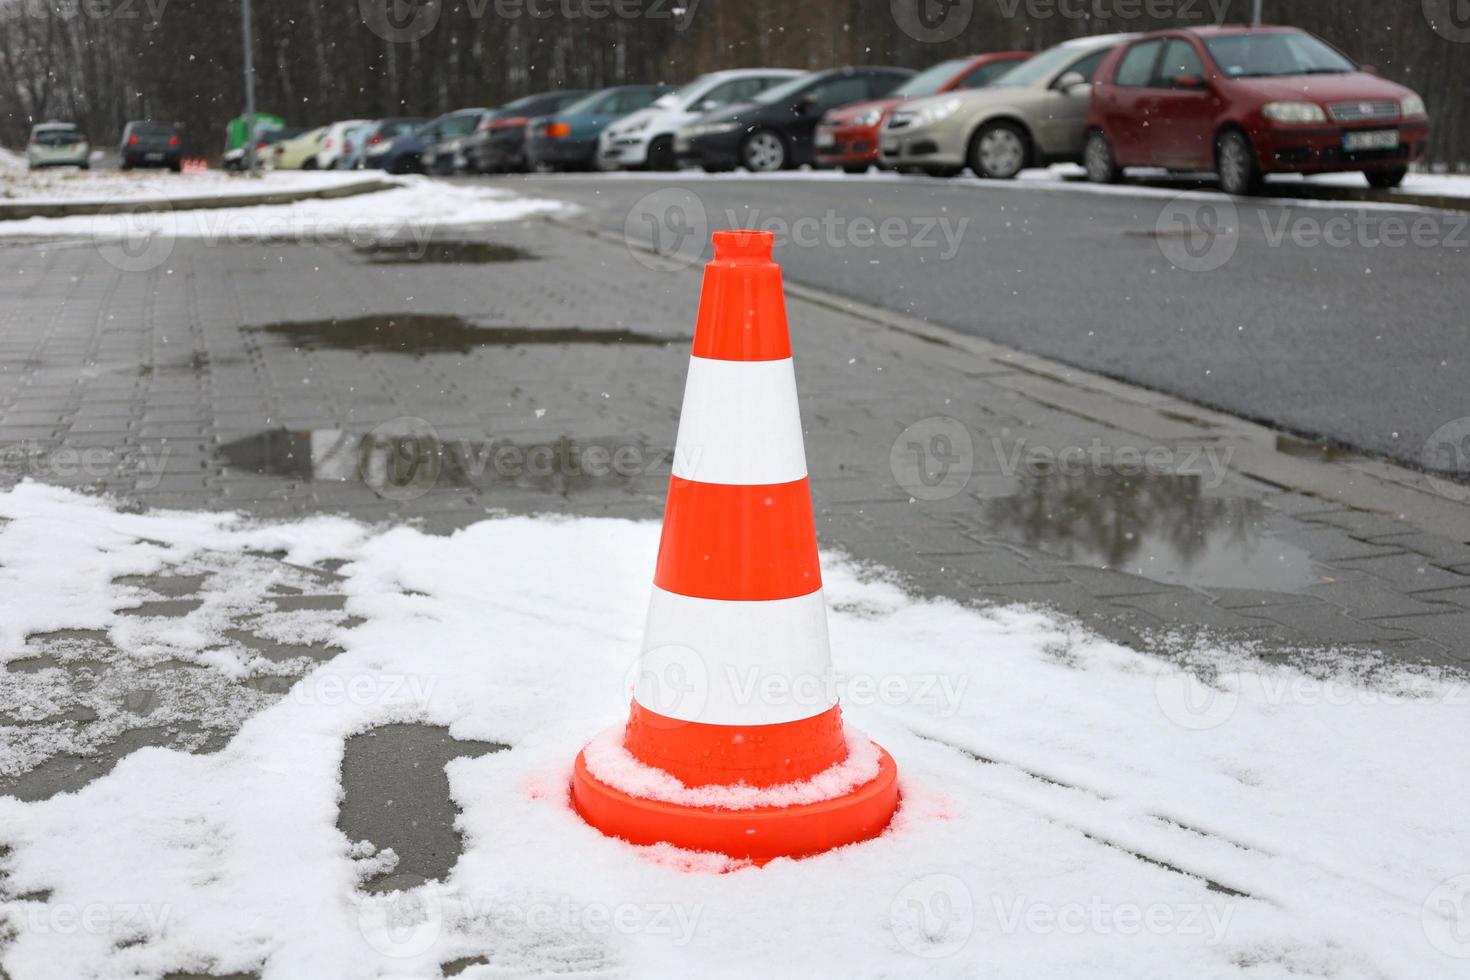 helder oranje verkeer kegels staand Aan zijlijn, gedekt vers wit sneeuw. begin van sneeuwval, sneeuwvlokken onscherp in voorgrond. auto's geparkeerd Aan achtergrond, onherkenbaar. foto